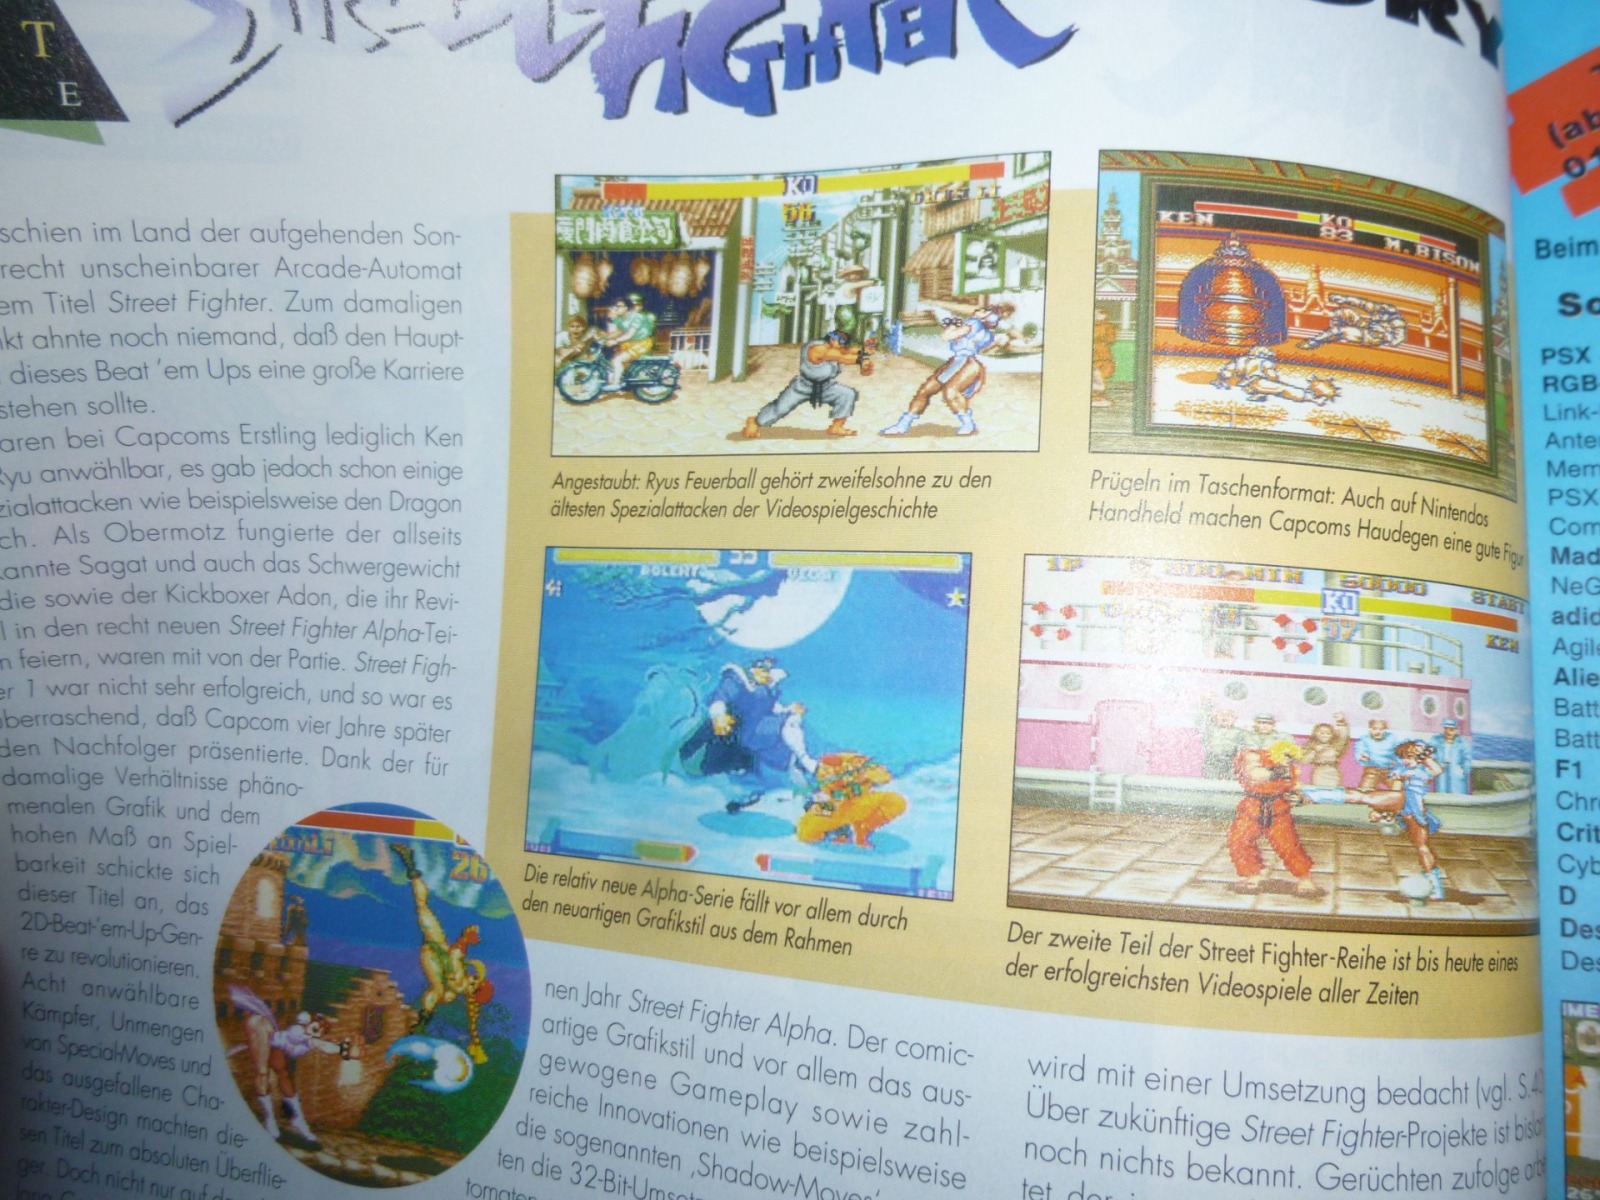 TOTAL Das unabhängige Magazin - 100 Nintendo - Ausgabe 10/96 1996 14